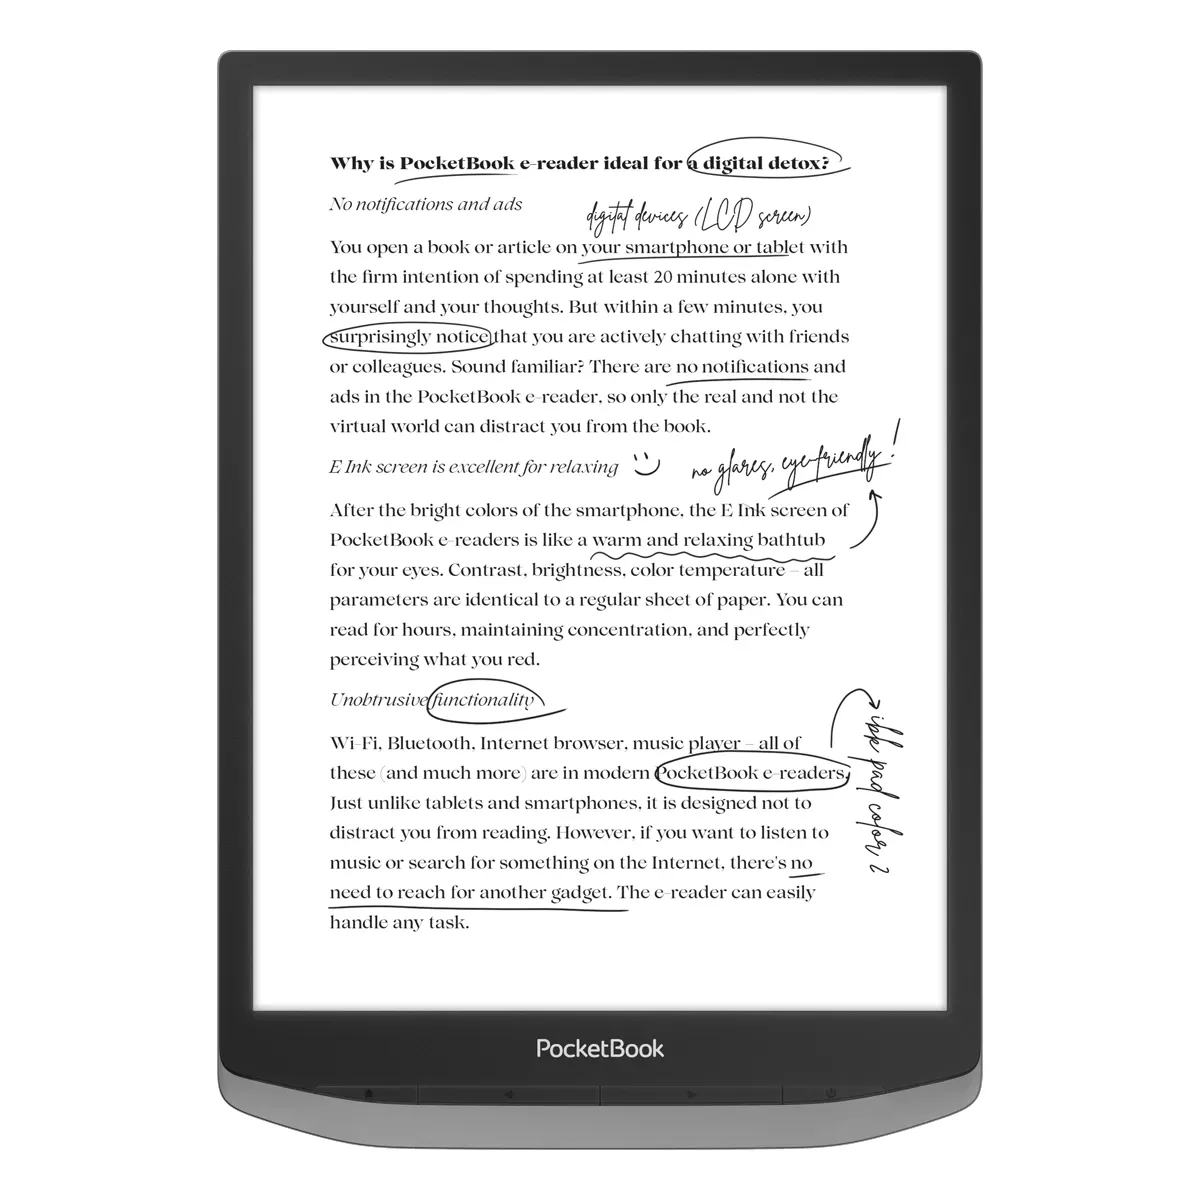 Pierwszy czytnik PocketBook InkPad X Pro z androidem